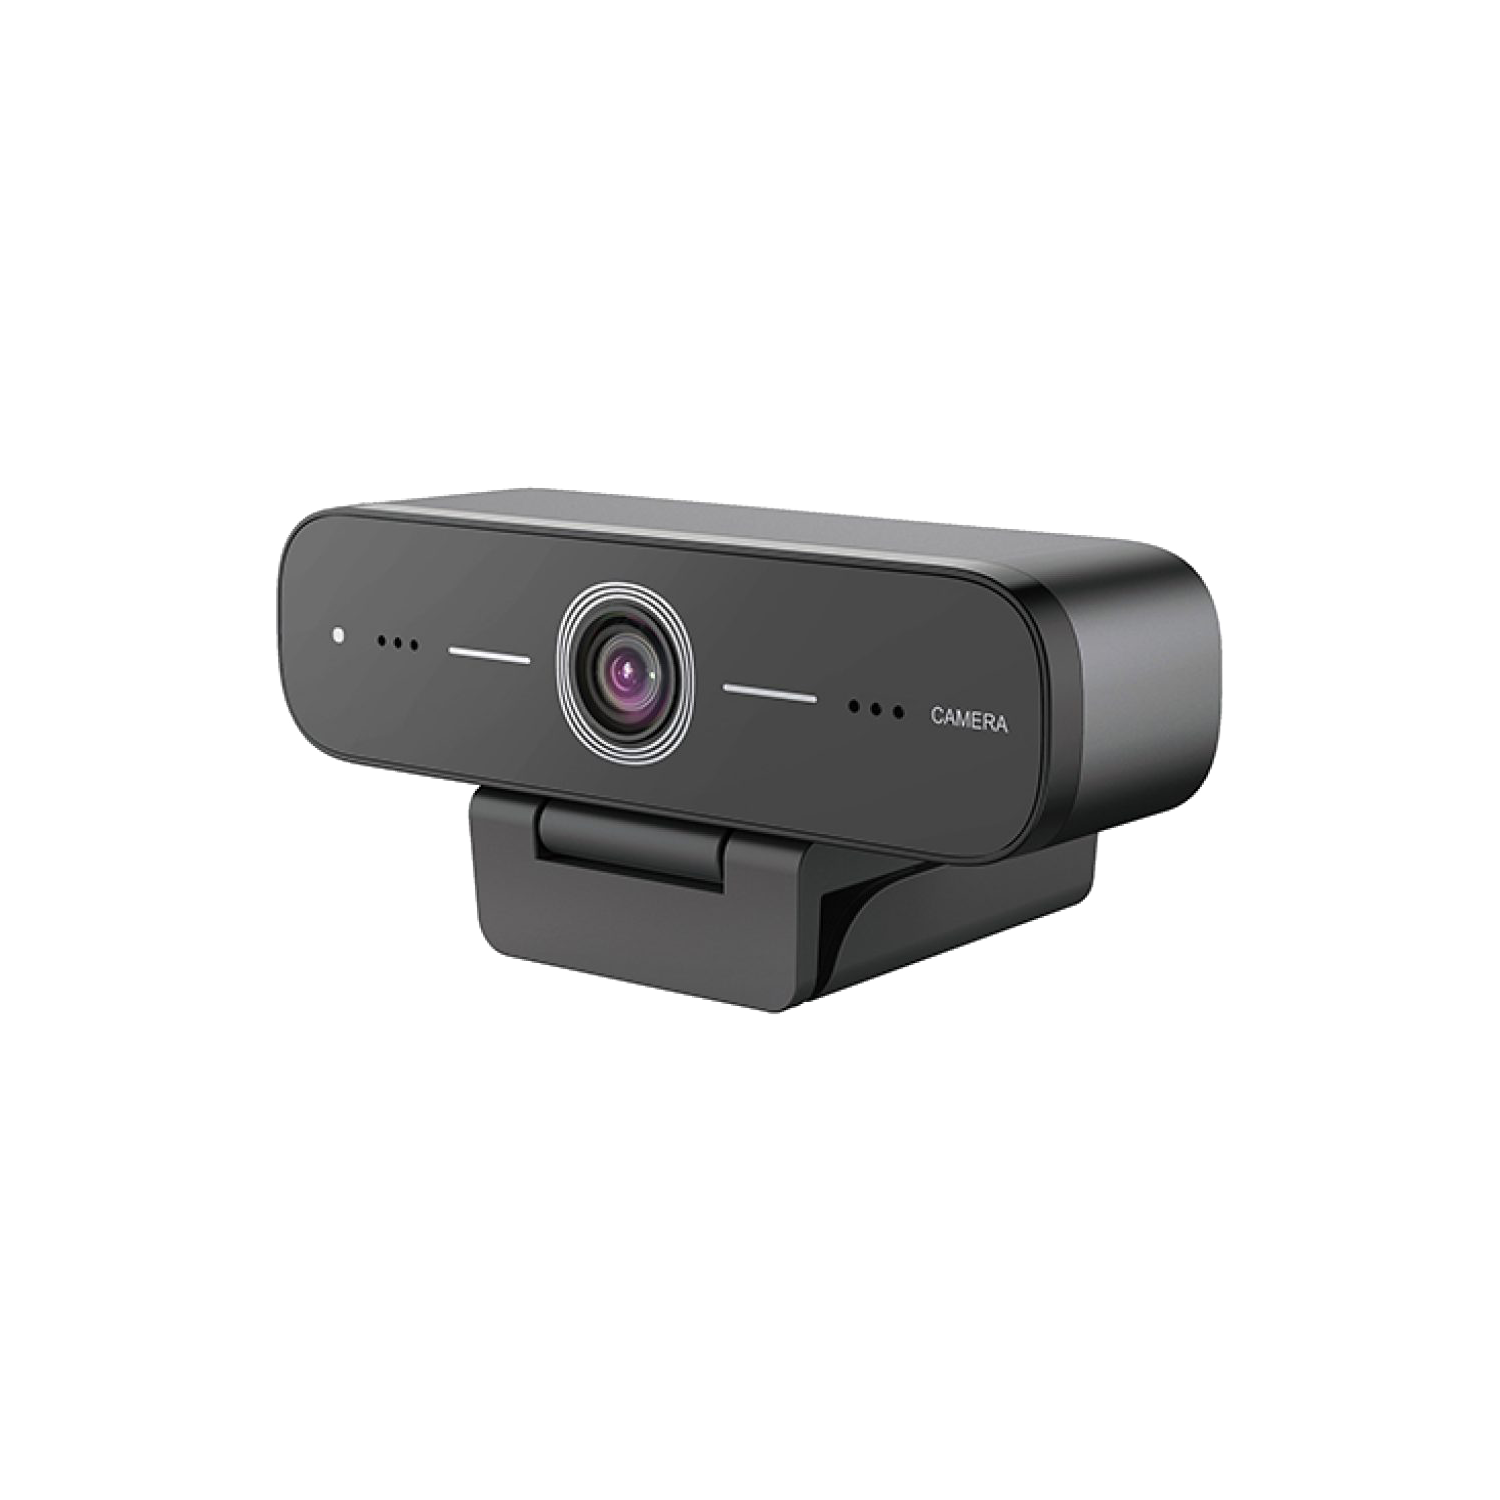 benq-dvy21-1080p-meeting-webcam-main